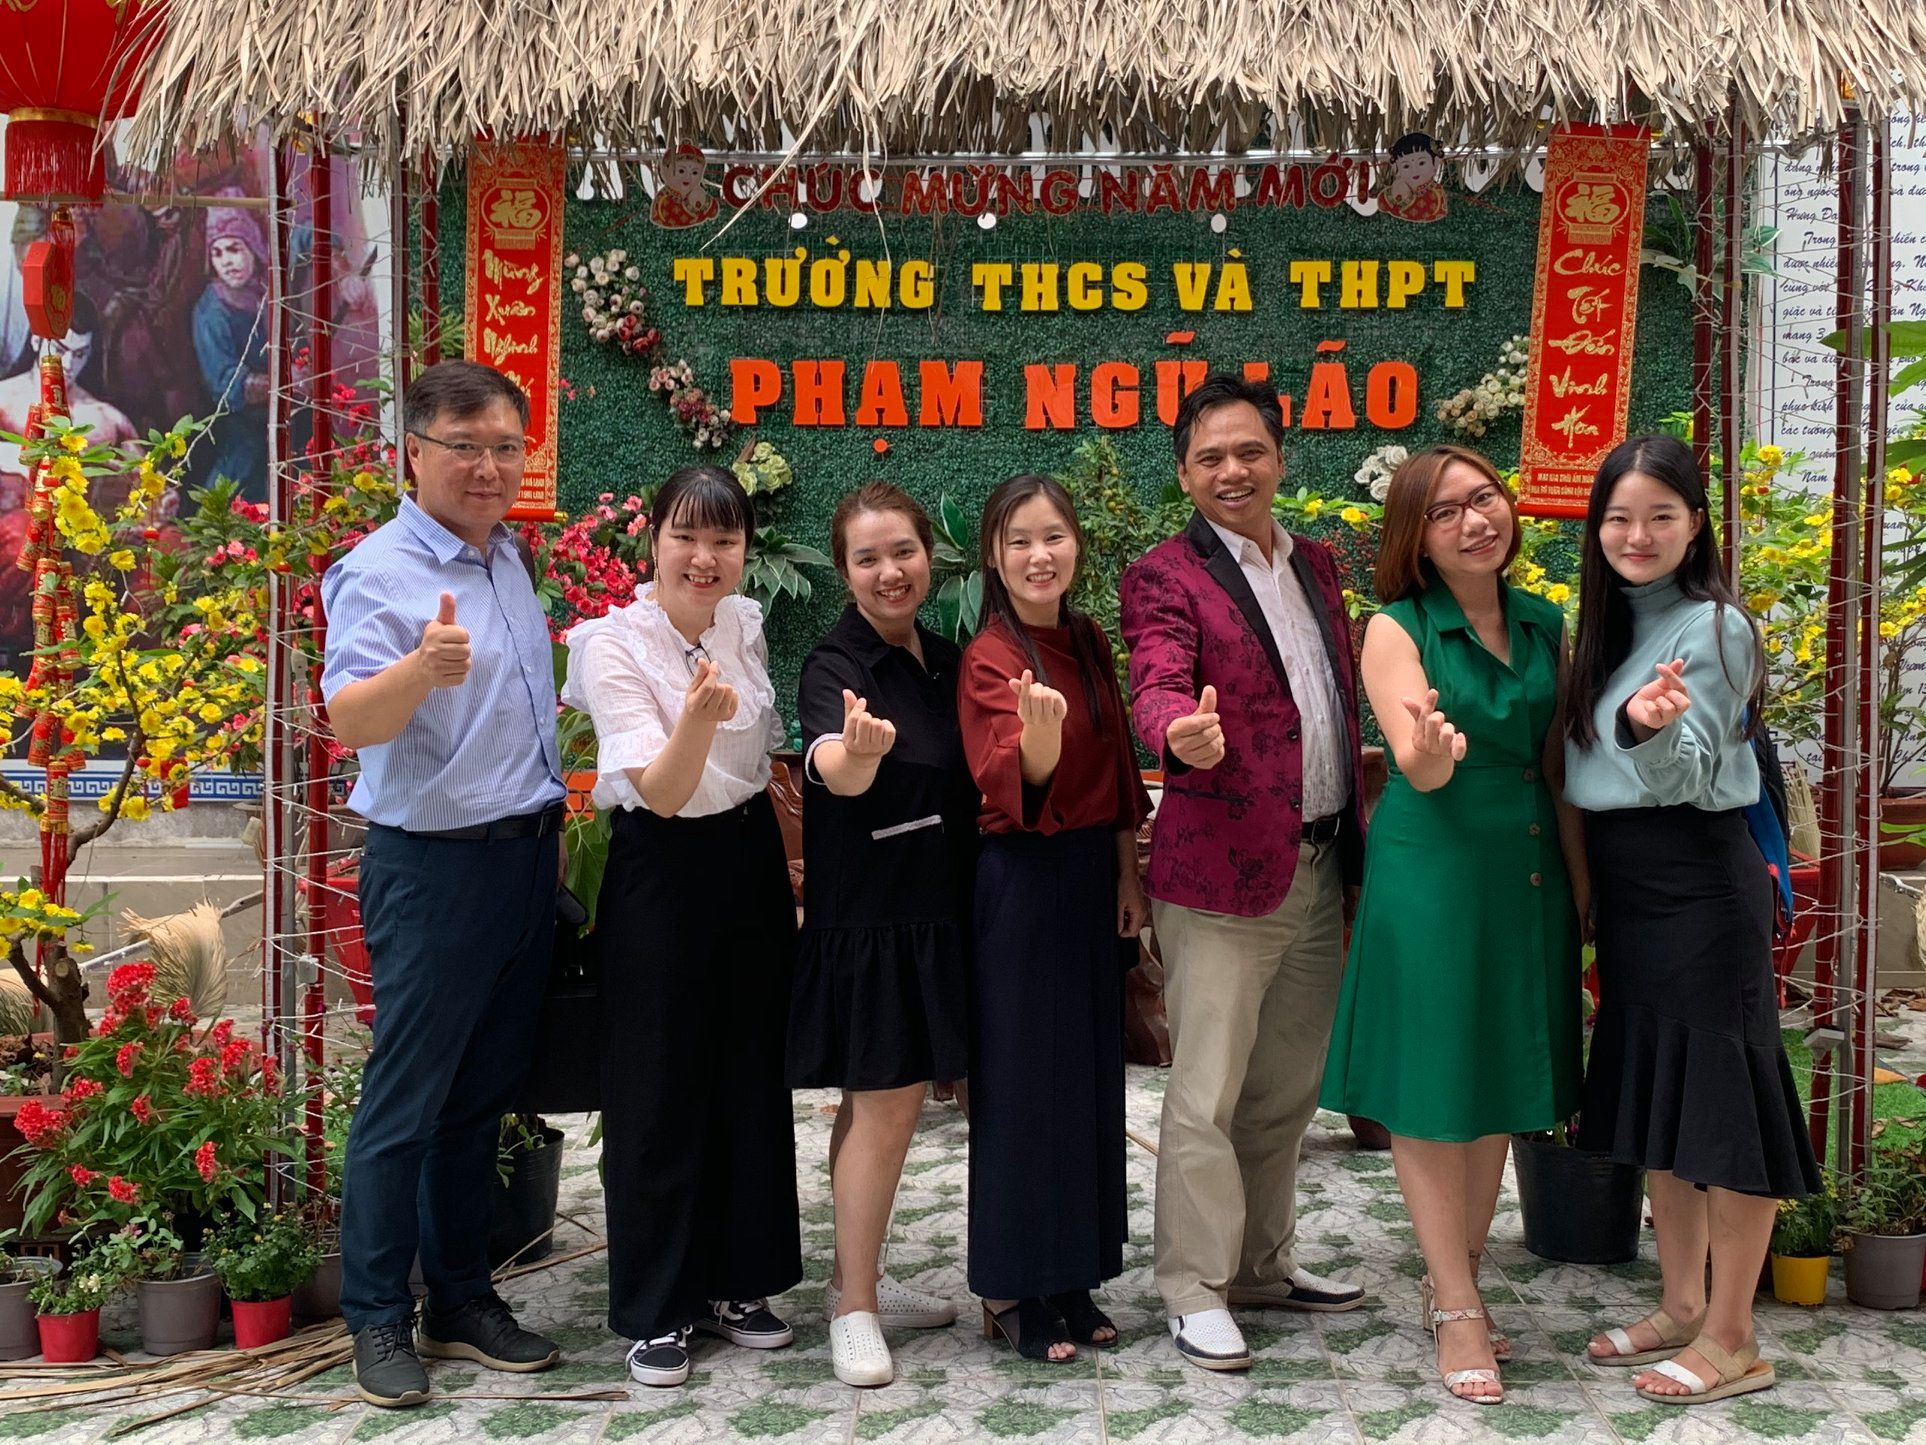 TRƯỜNG THCS & THPT PHẠM NGŨ LÃO GIAO LƯU VỚI TRƯỜNG ĐẠI HỌC WONKWANG, HÀN QUỐC